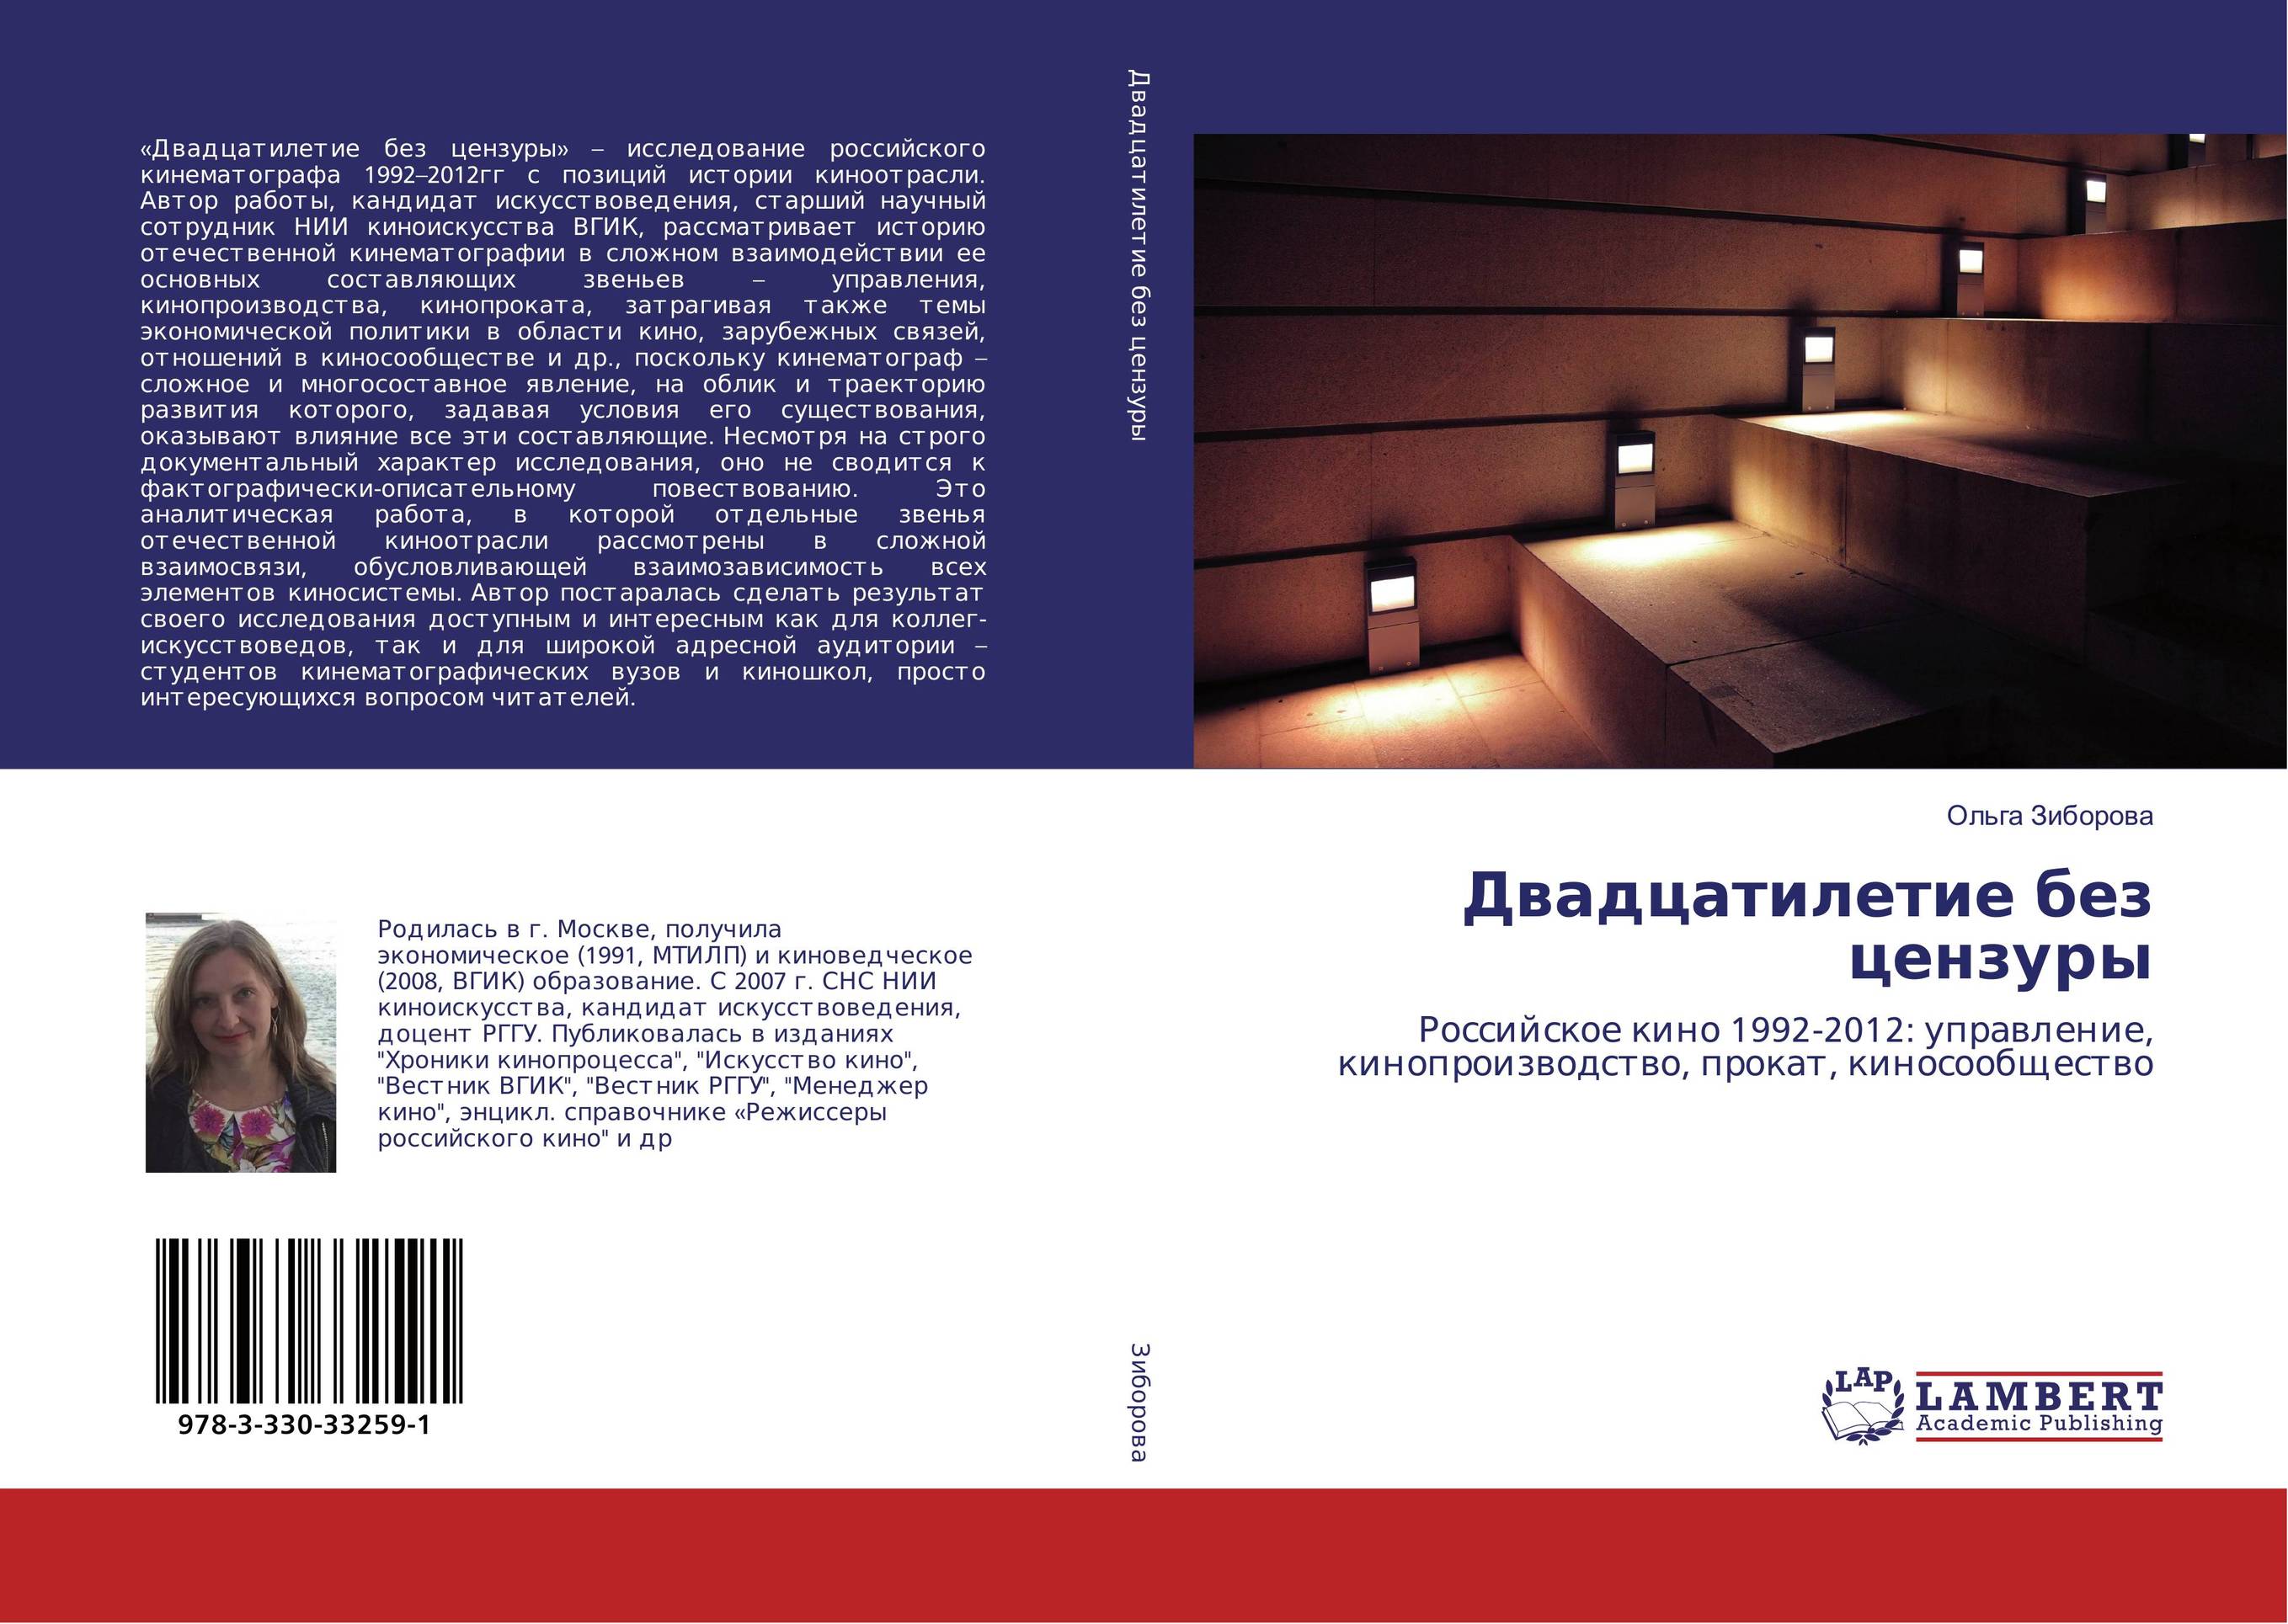 
        Двадцатилетие без цензуры. Российское кино 1992-2012: управление, кинопроизводство, прокат, киносообщество.
      